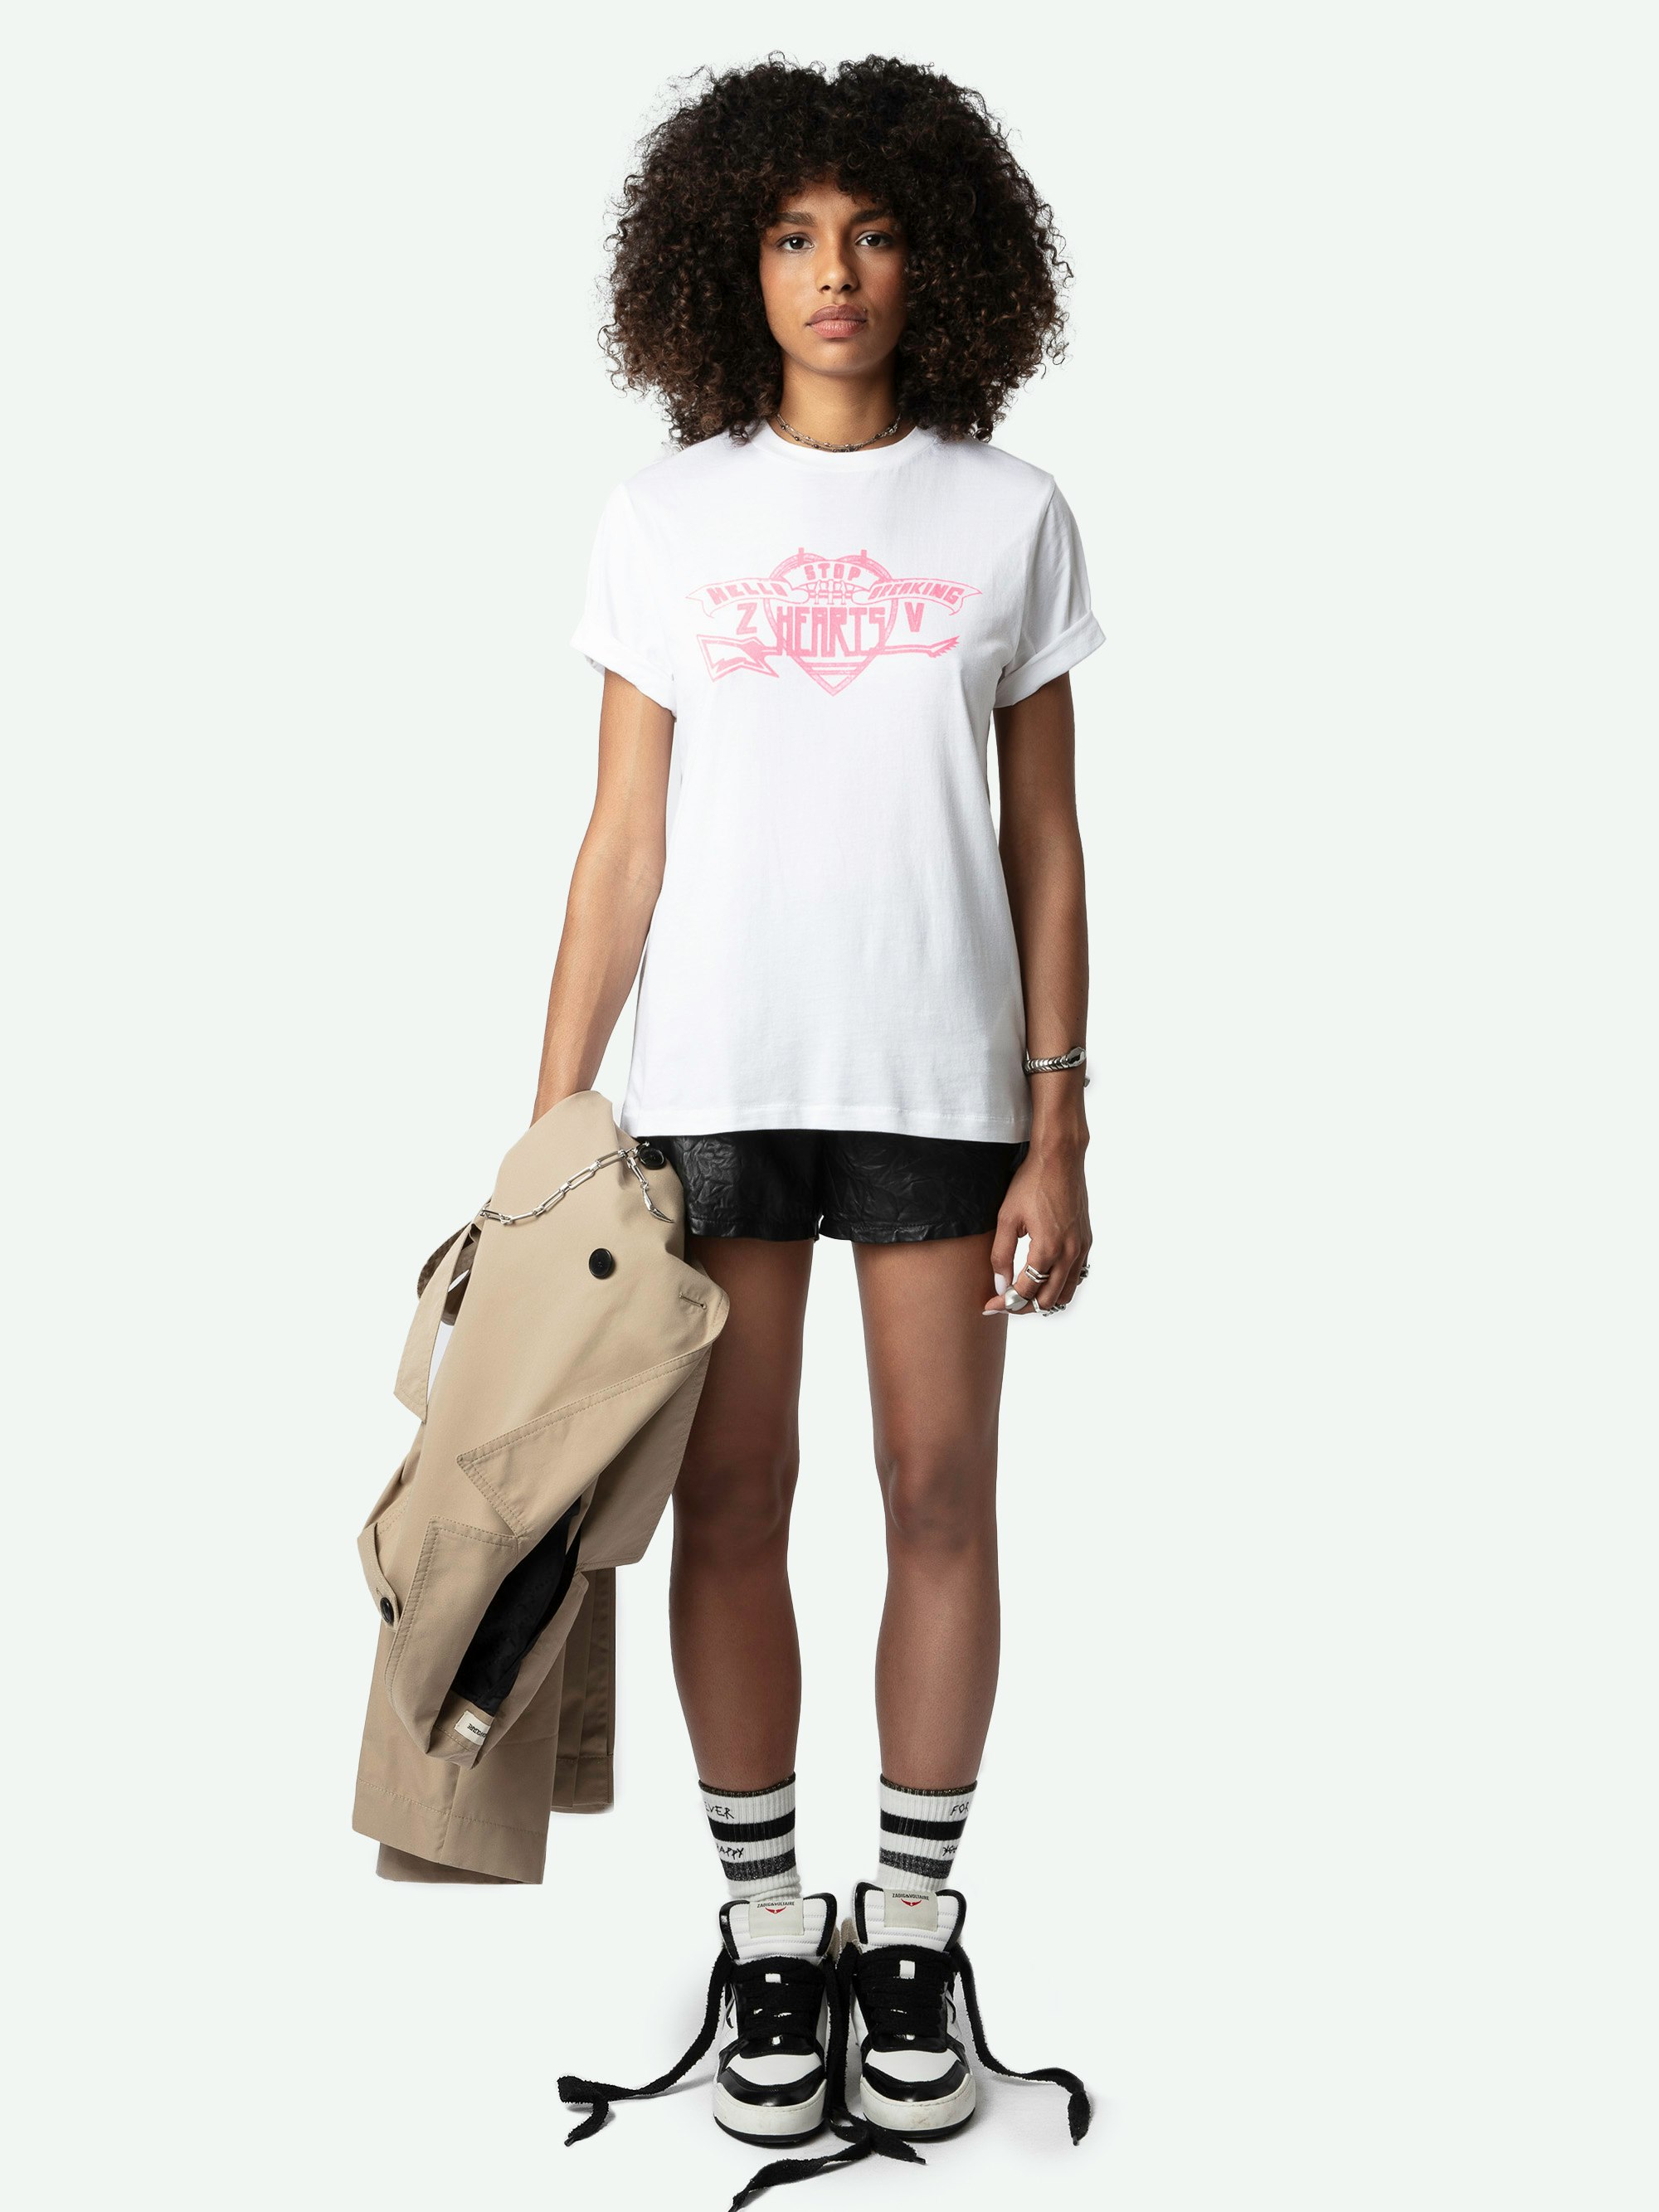 T-shirt Edwin Hearts - T-shirt bianca oversize in cotone biologico con maniche corte e floccatura "Hello Stop Breaking Hearts" sul davanti.